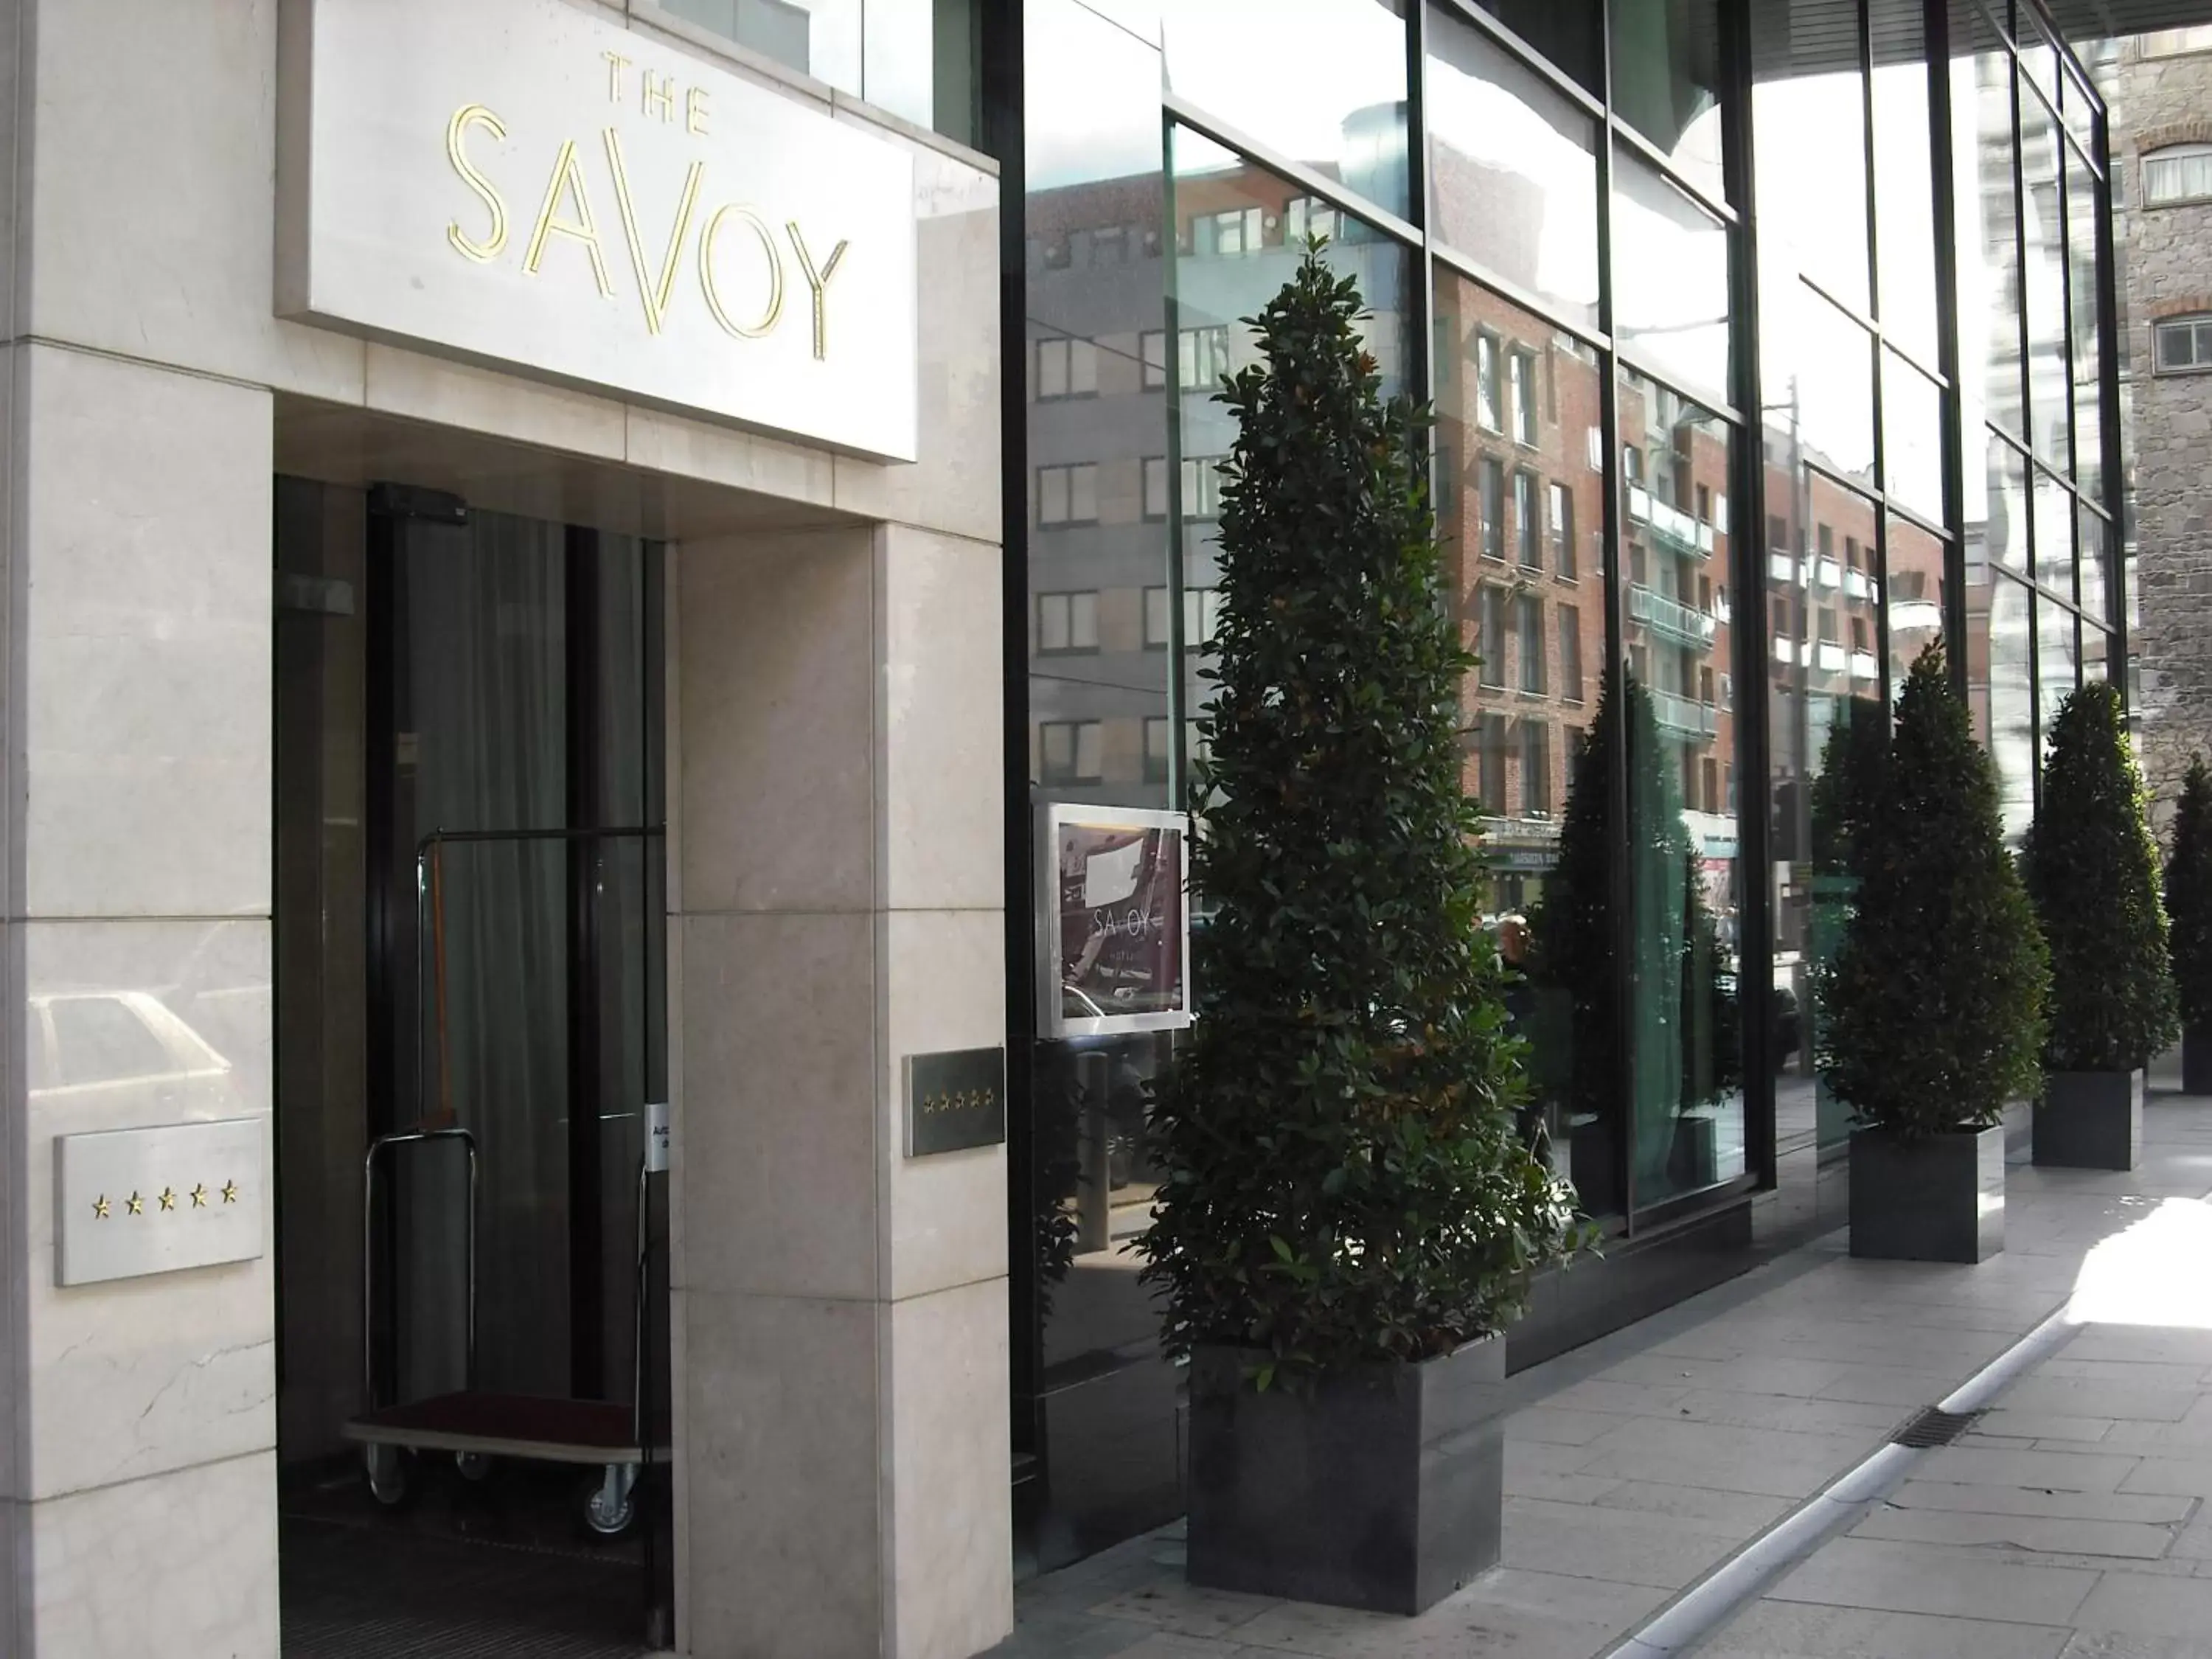 Facade/entrance in The Savoy Hotel